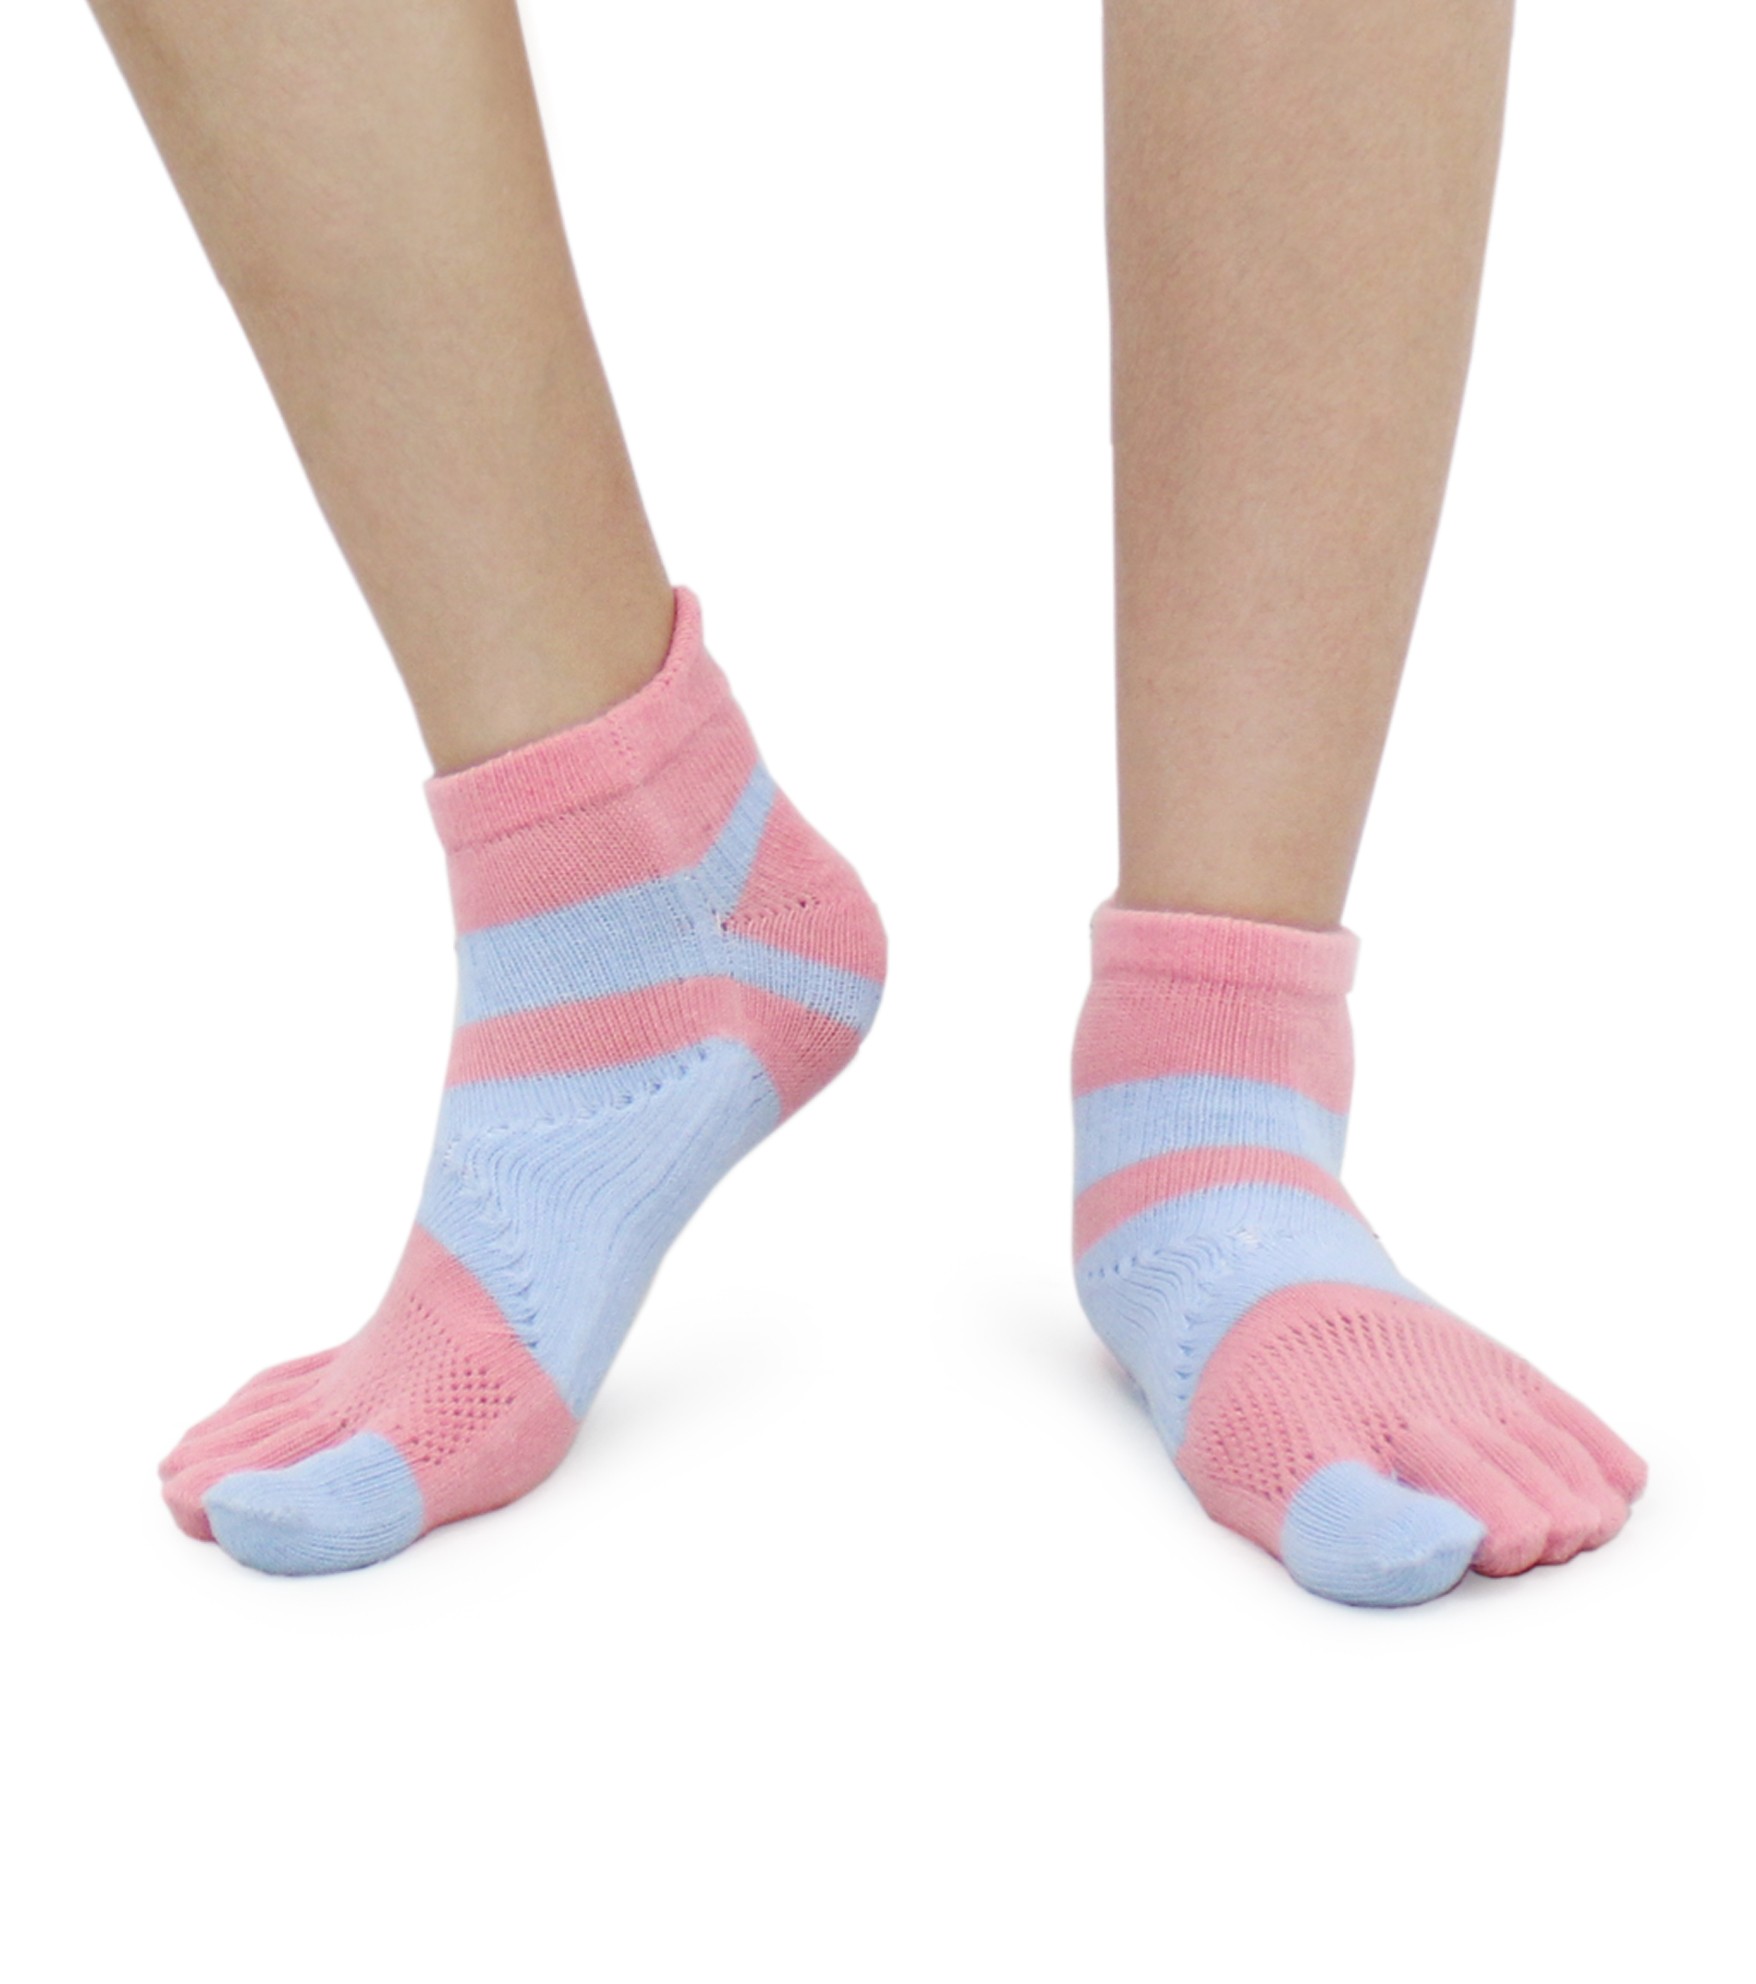 足弓 防臭 保護腳部 五指襪 亮麗彩色 女生尺寸 嫩粉Arch, Deodorant, Foot Protection,  Five-finger Socks, Bright Color, Girl' size, Comfortable, Excellent material